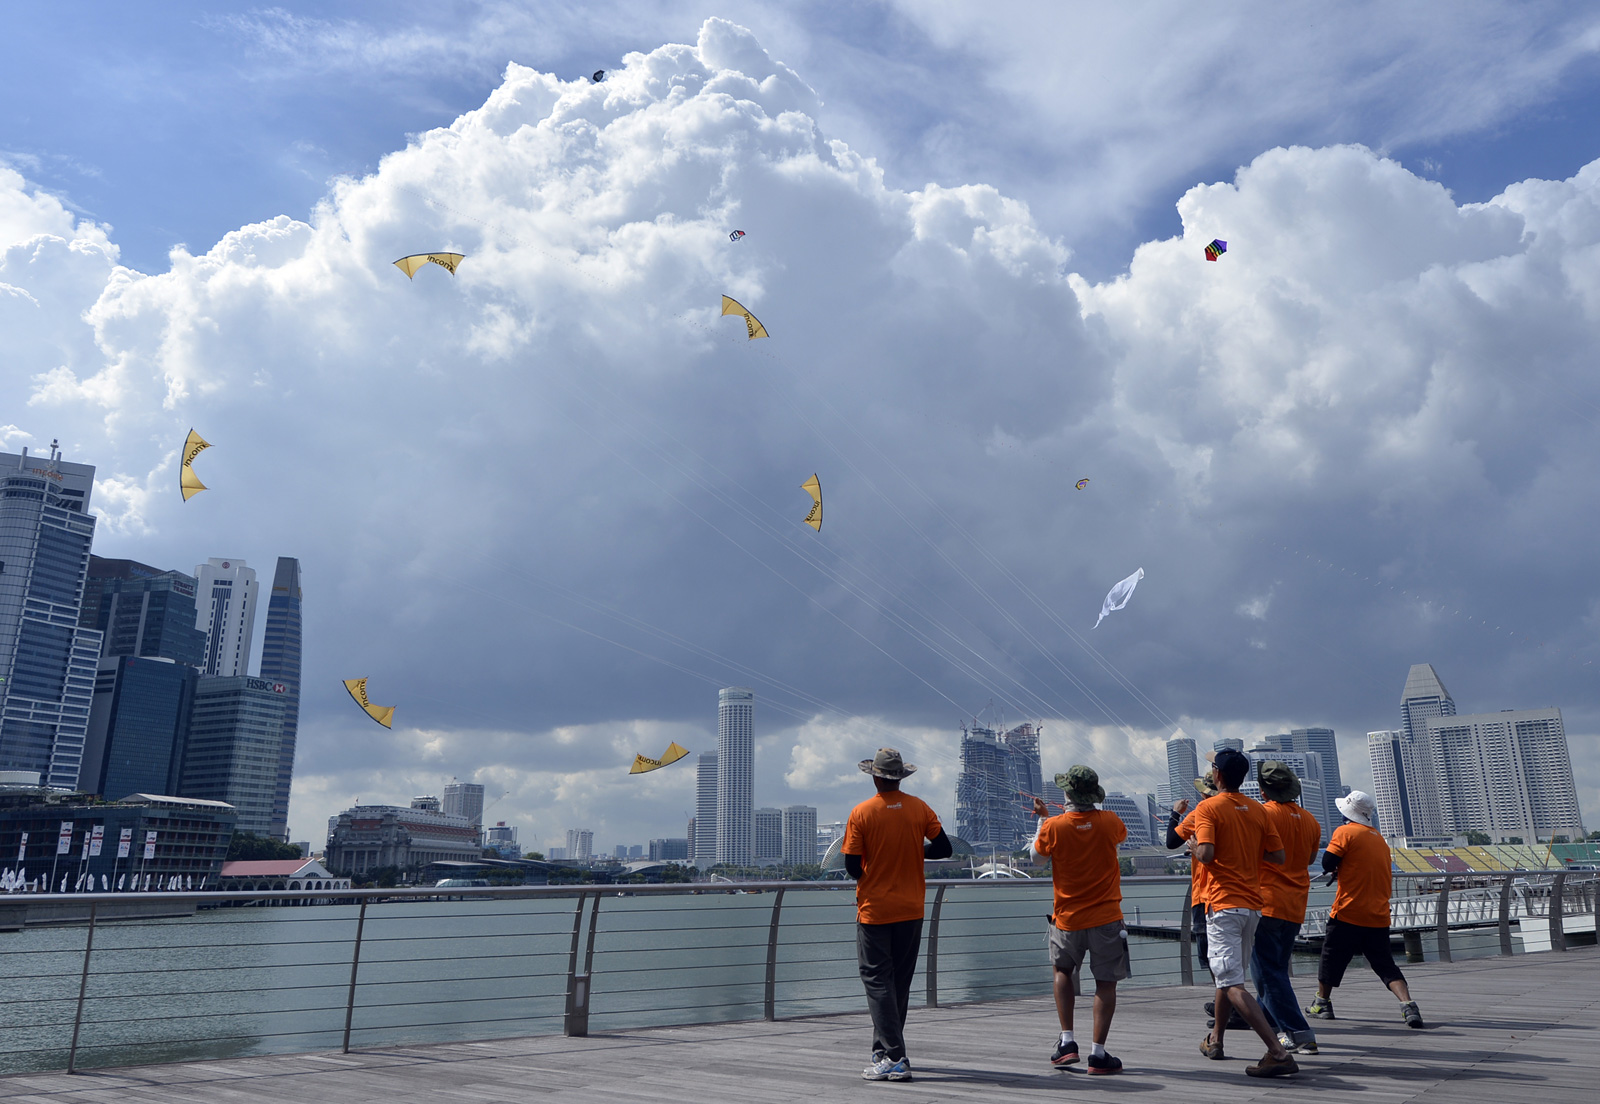 Singapore Kite Festival 'Durian' kites try to take to the skies at